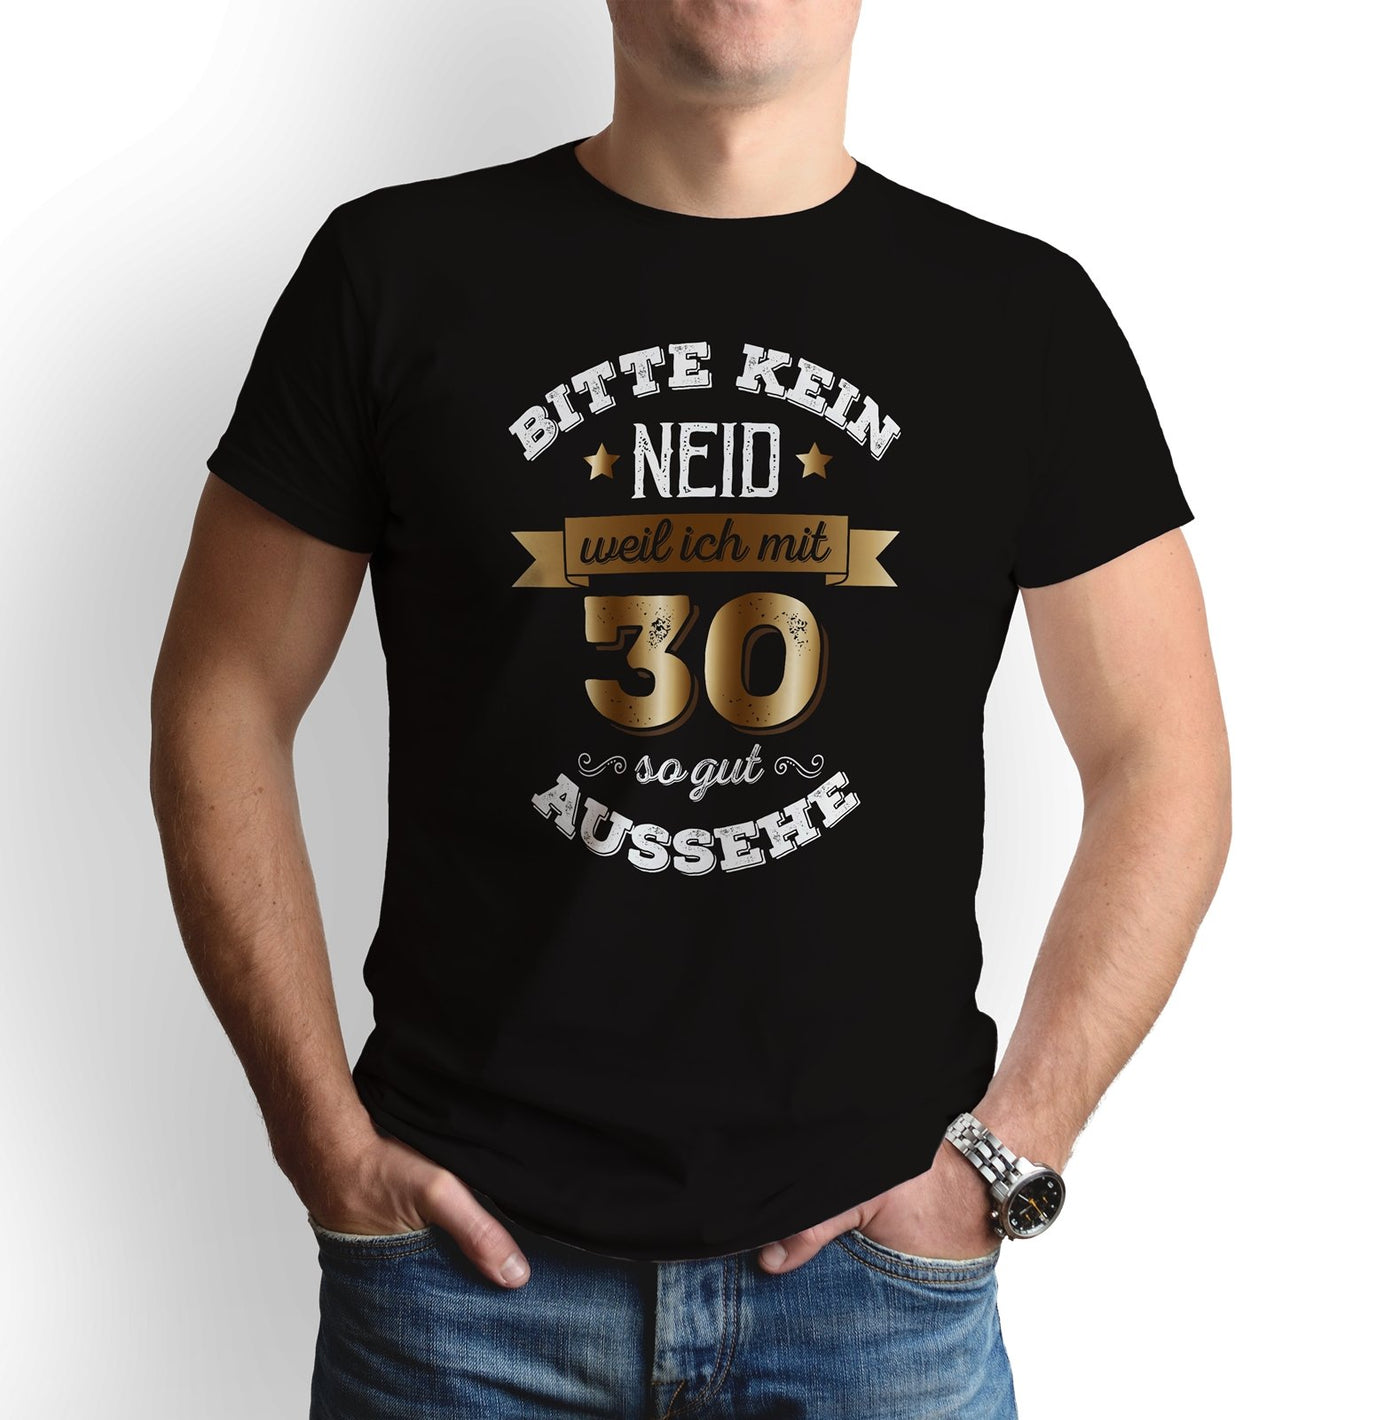 Bild: T-Shirt - Bitte kein Neid, weil ich mit 30 so gut aussehe. Geschenkidee